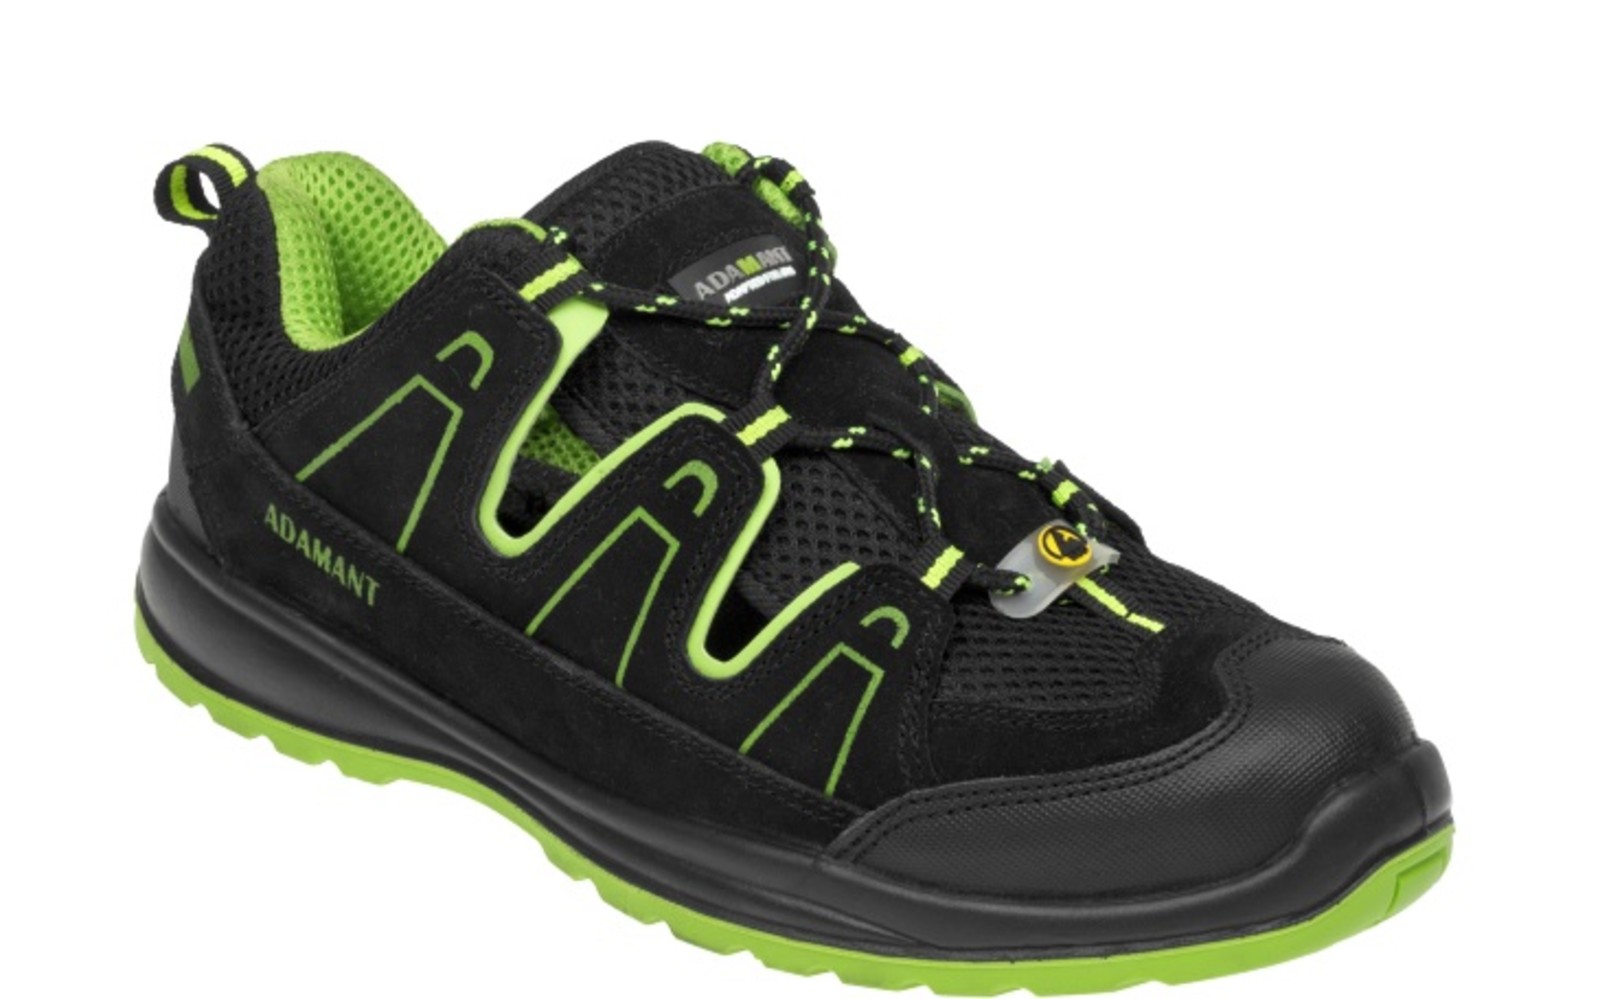 Bezpečnostné sandále Adamant Alegro S1 ESD - veľkosť: 42, farba: čierna/zelená